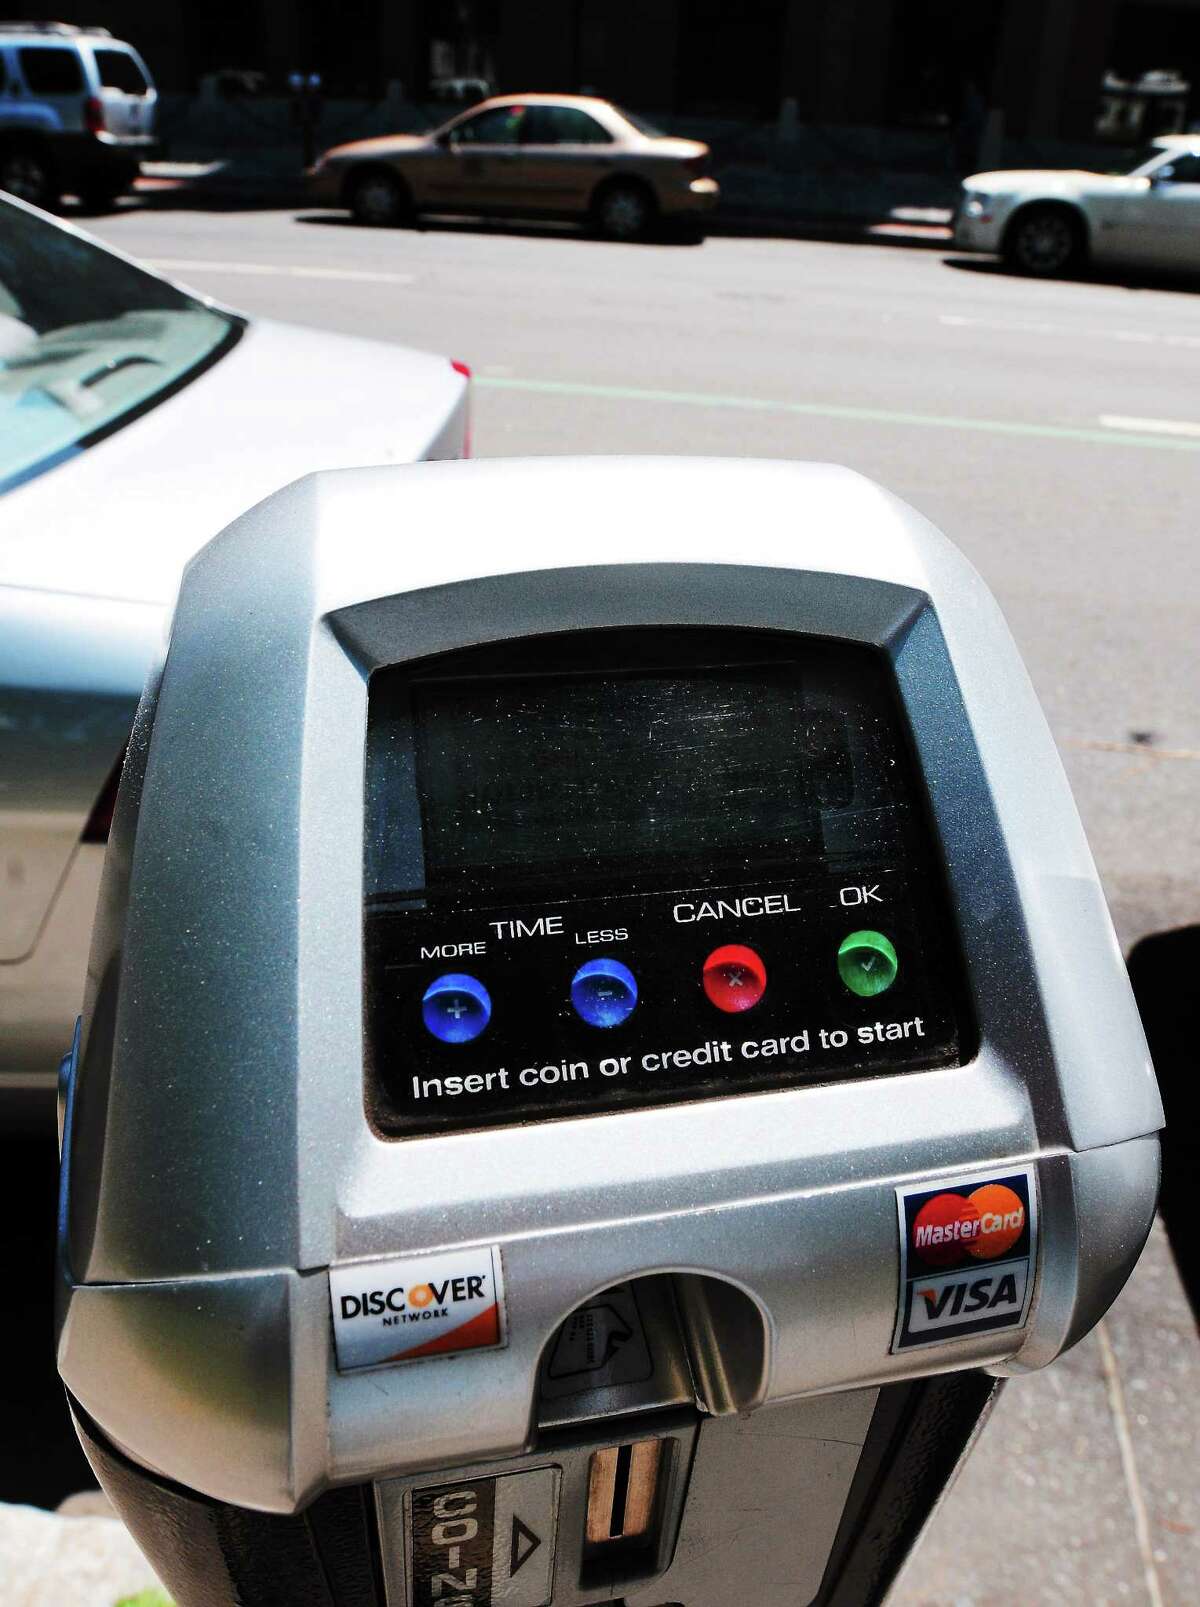 Peter Hvizdak — Register Parking Meter, Church Street. Thursday July 18, 2013